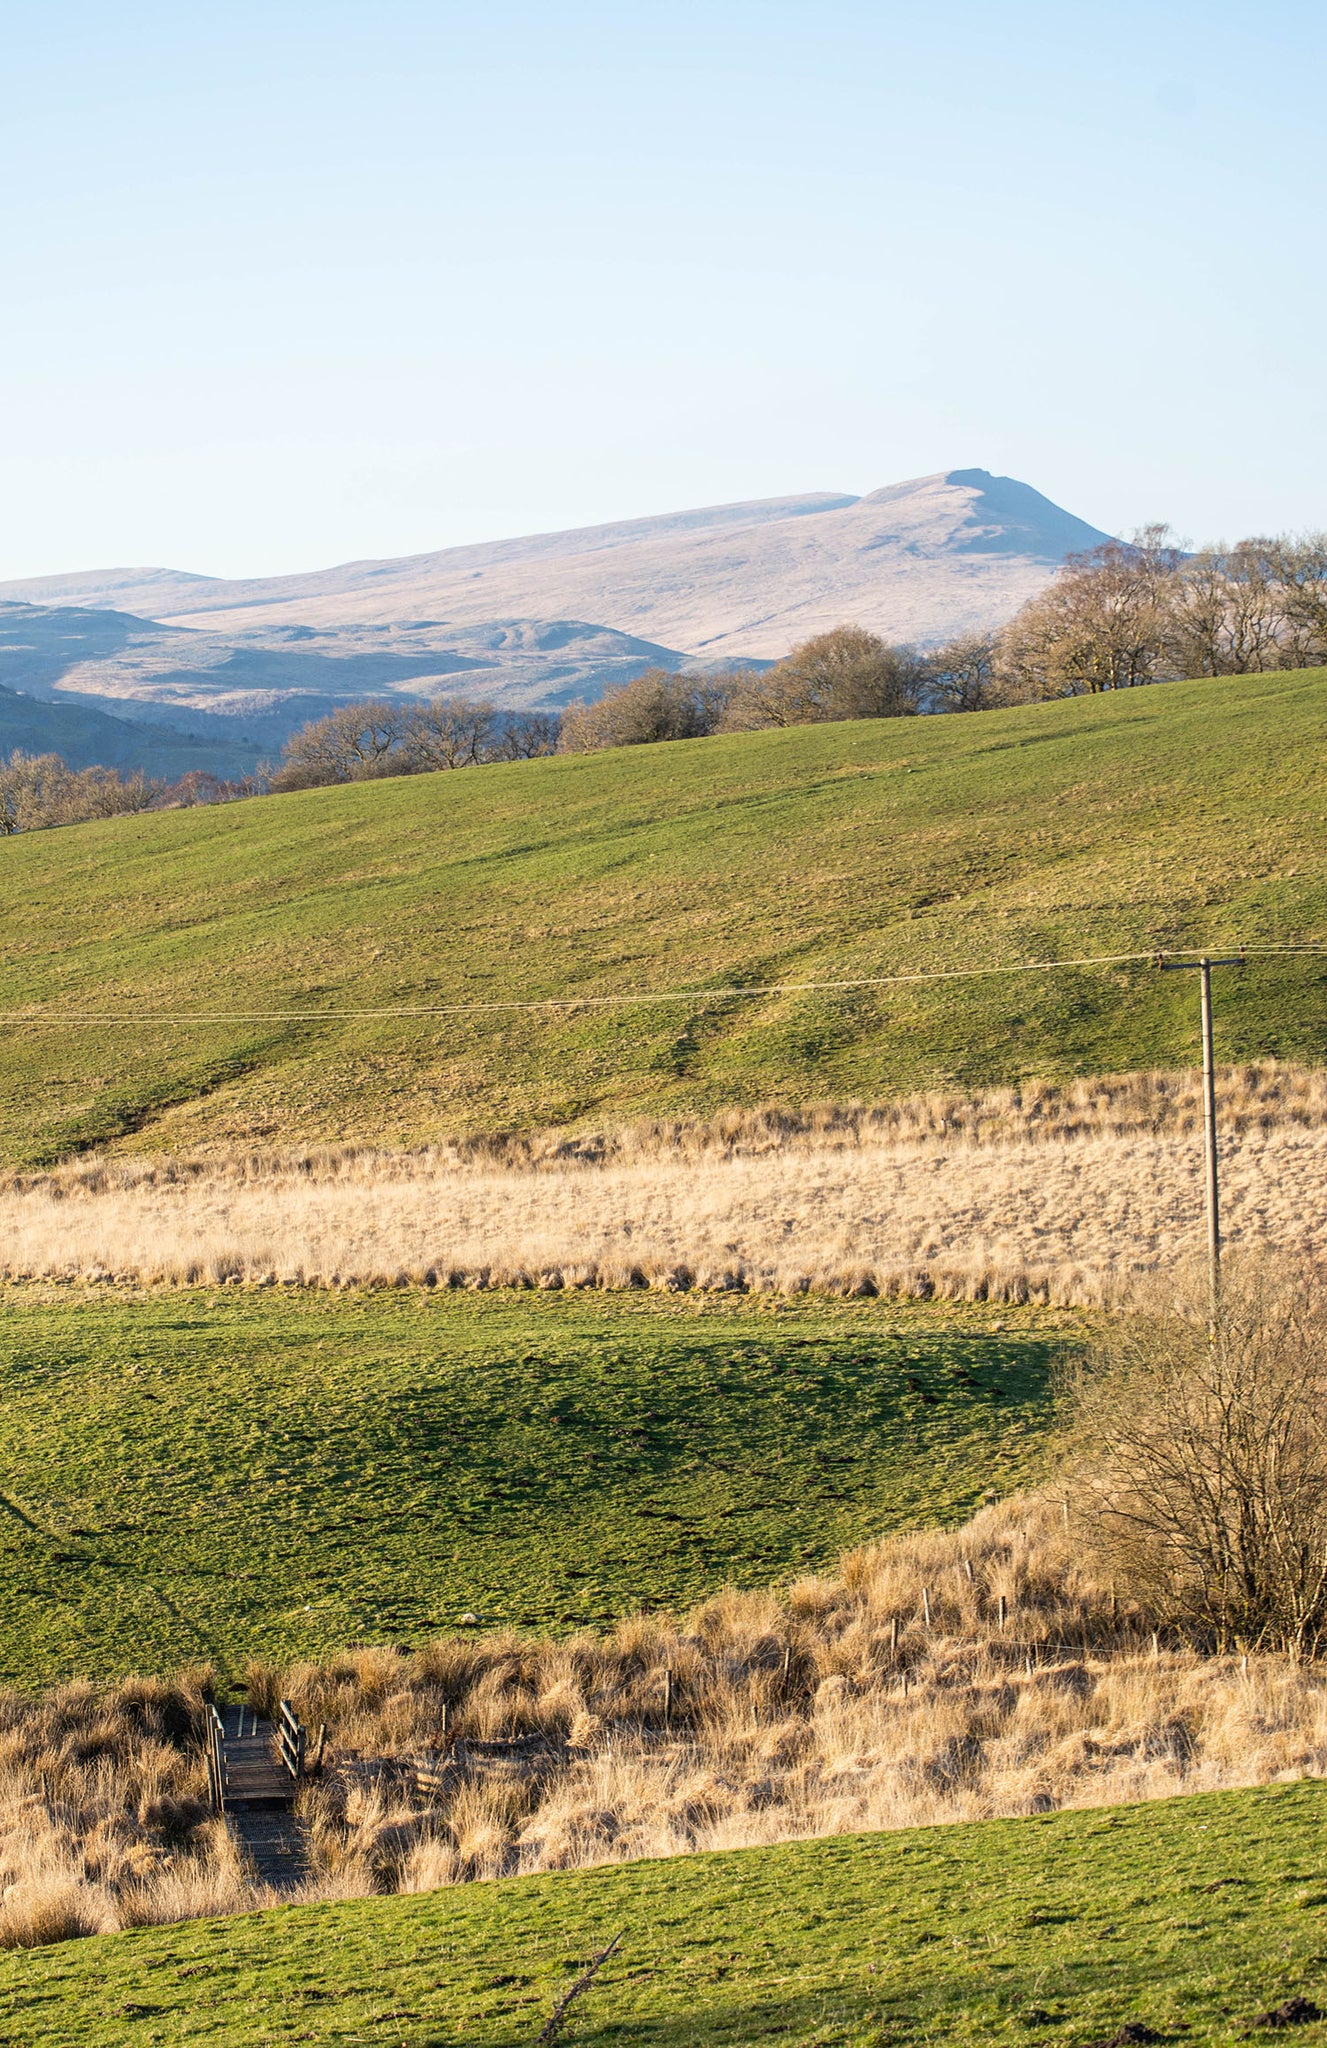 Blick über einen fernen walisischen Berg. Die Legende besagt, dass dies die steinernen Überreste von Drachen sind.